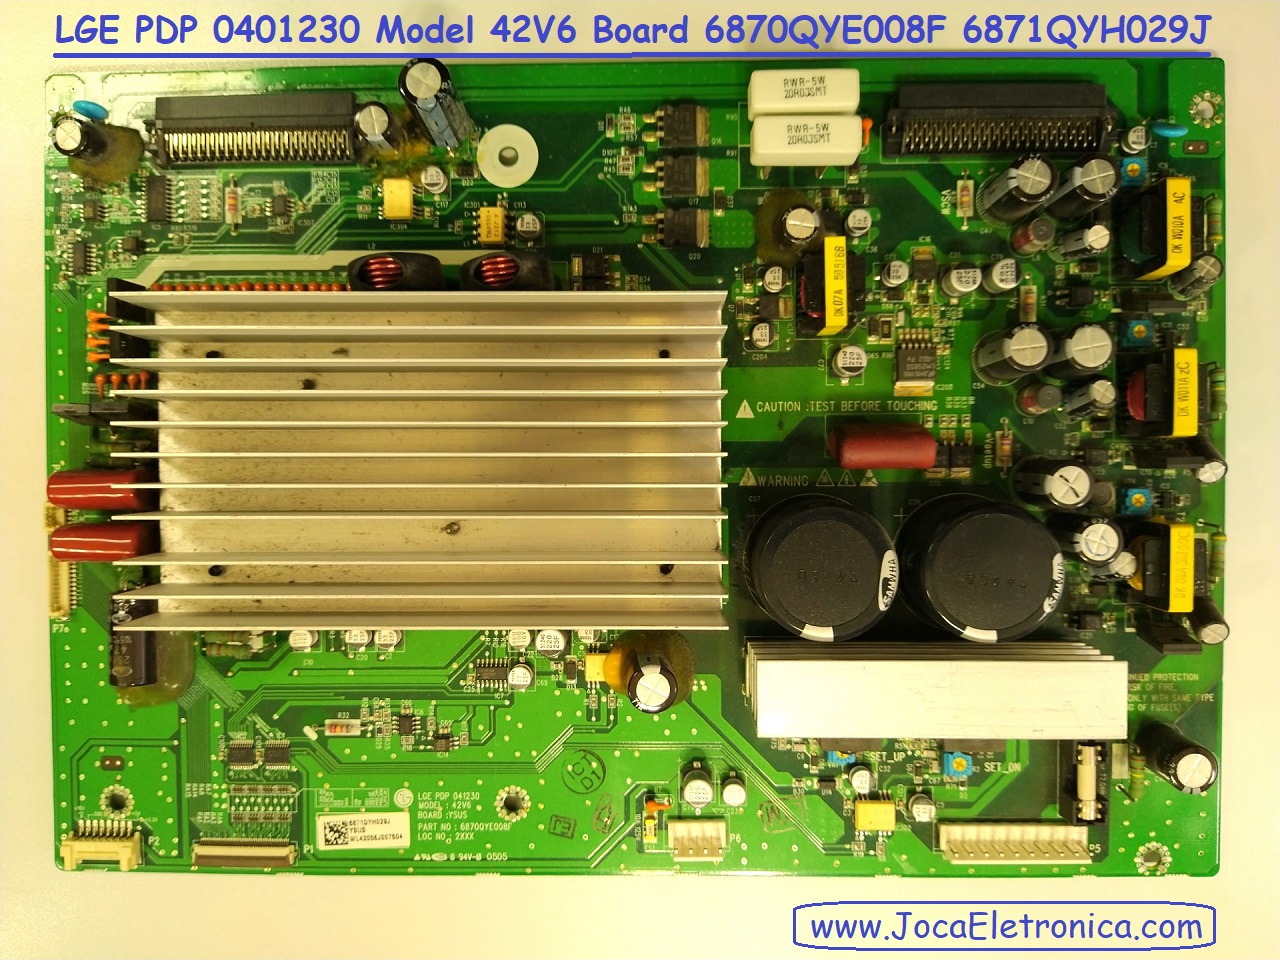 LGE PDP 0401230 Model 42V6 Board 6870QYE008F 6871QYH029J